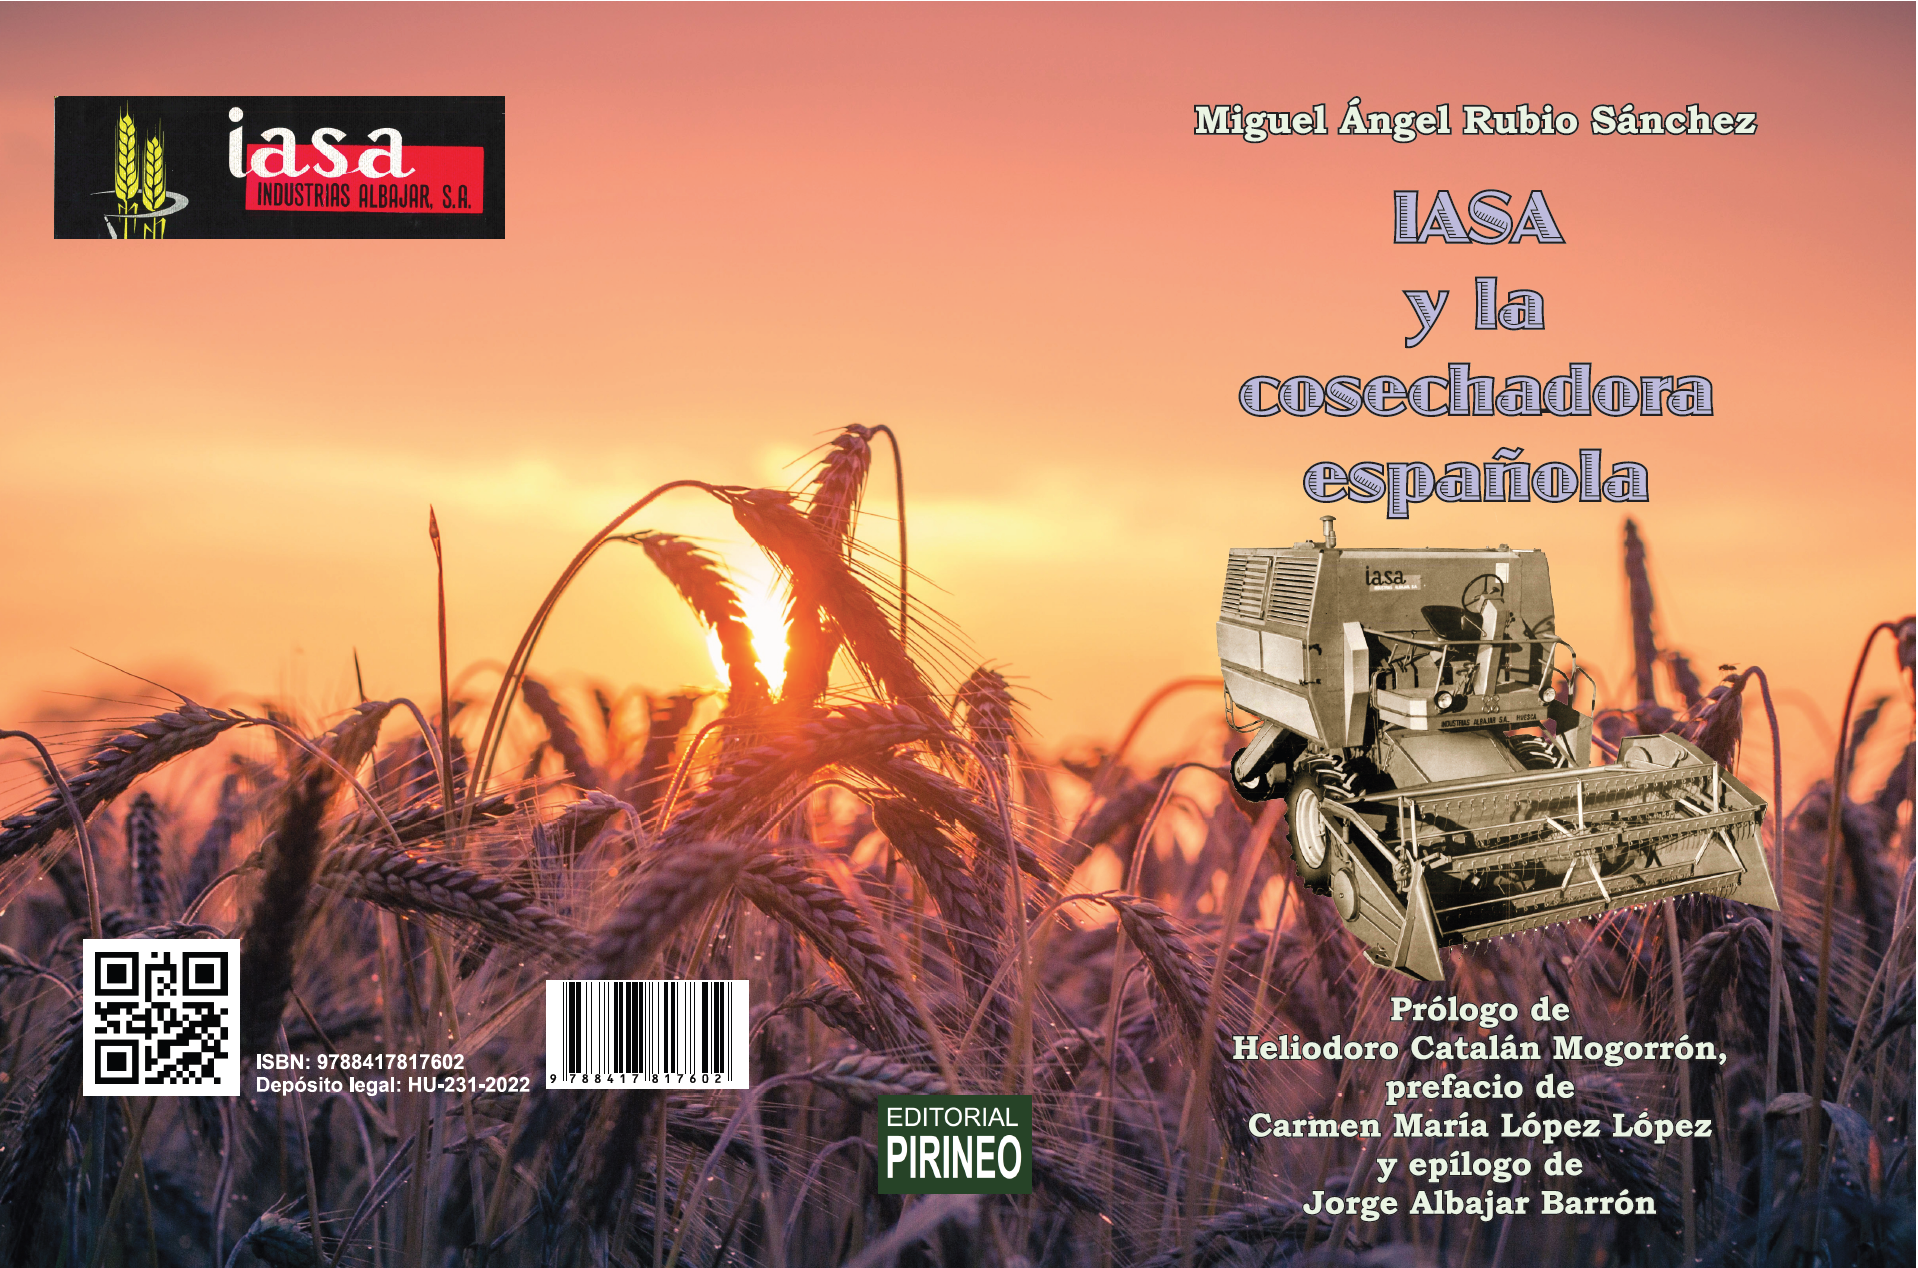 IASA y la cosechadora española